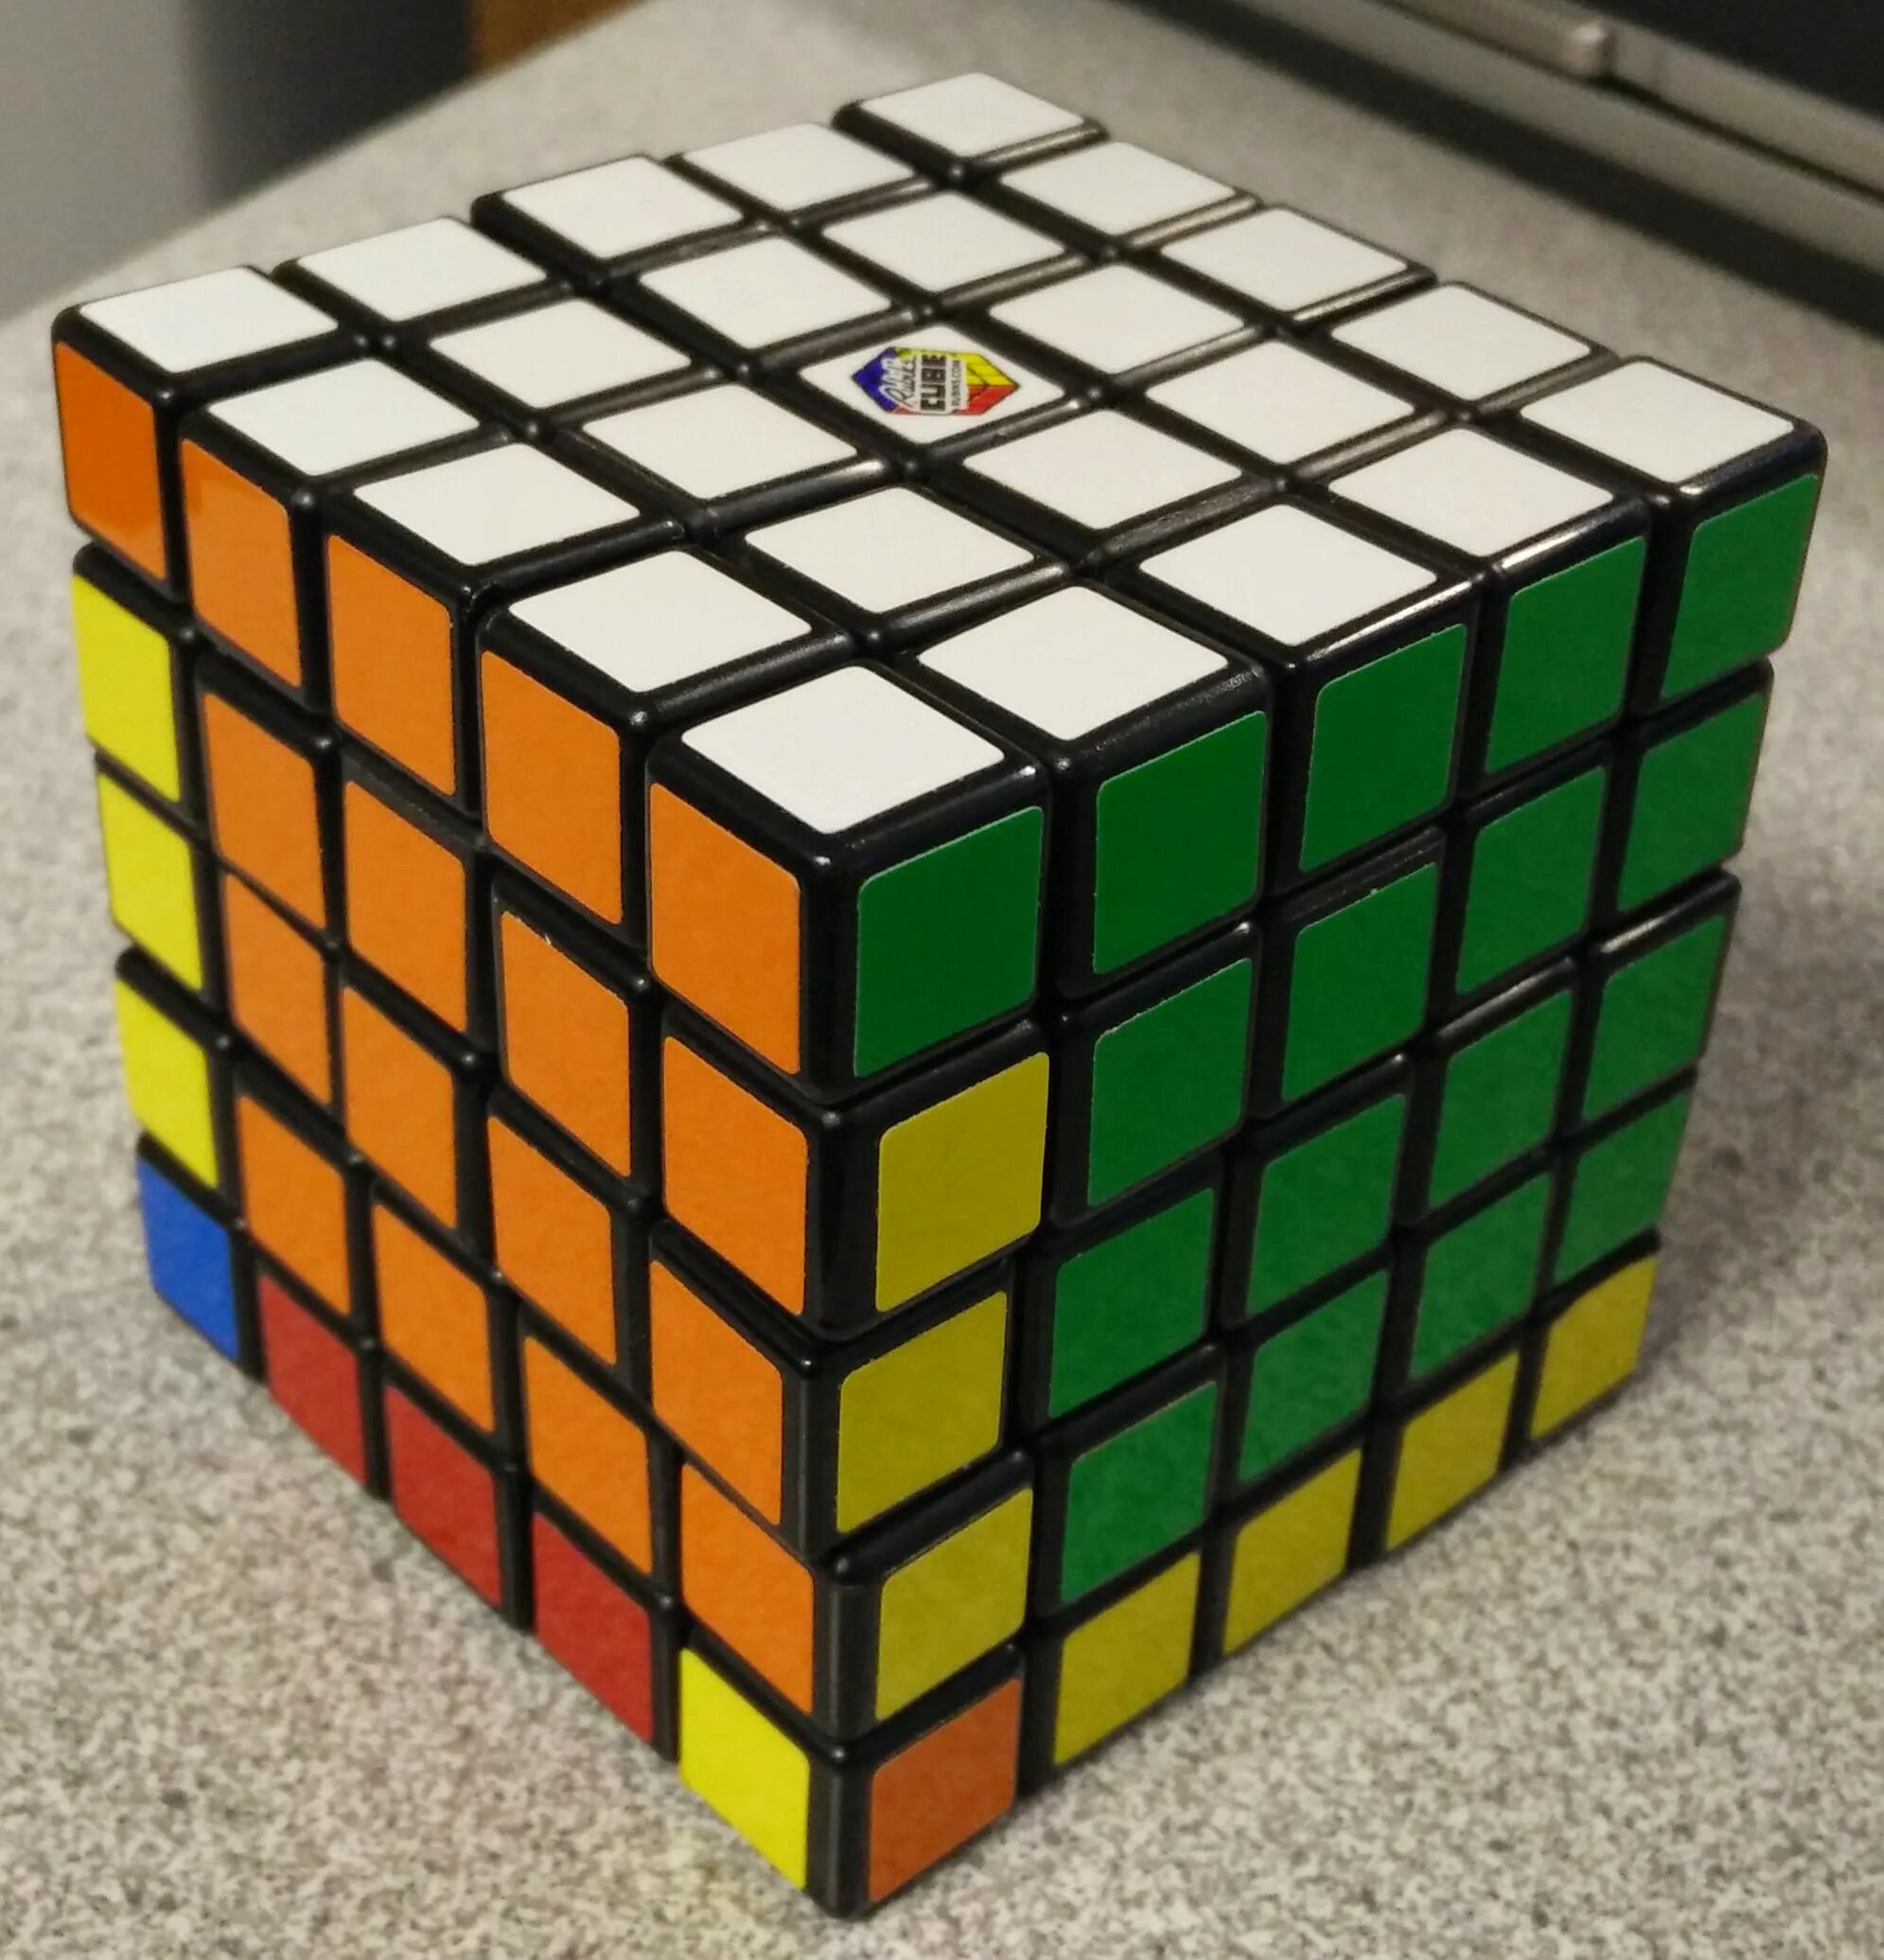 Цвета рубика. Кубик Рубика Рубикс. Кьюб кубик Рубика. Рубикс кубик Рубика 3х3 большой. Рубикс Войт Кьюб.